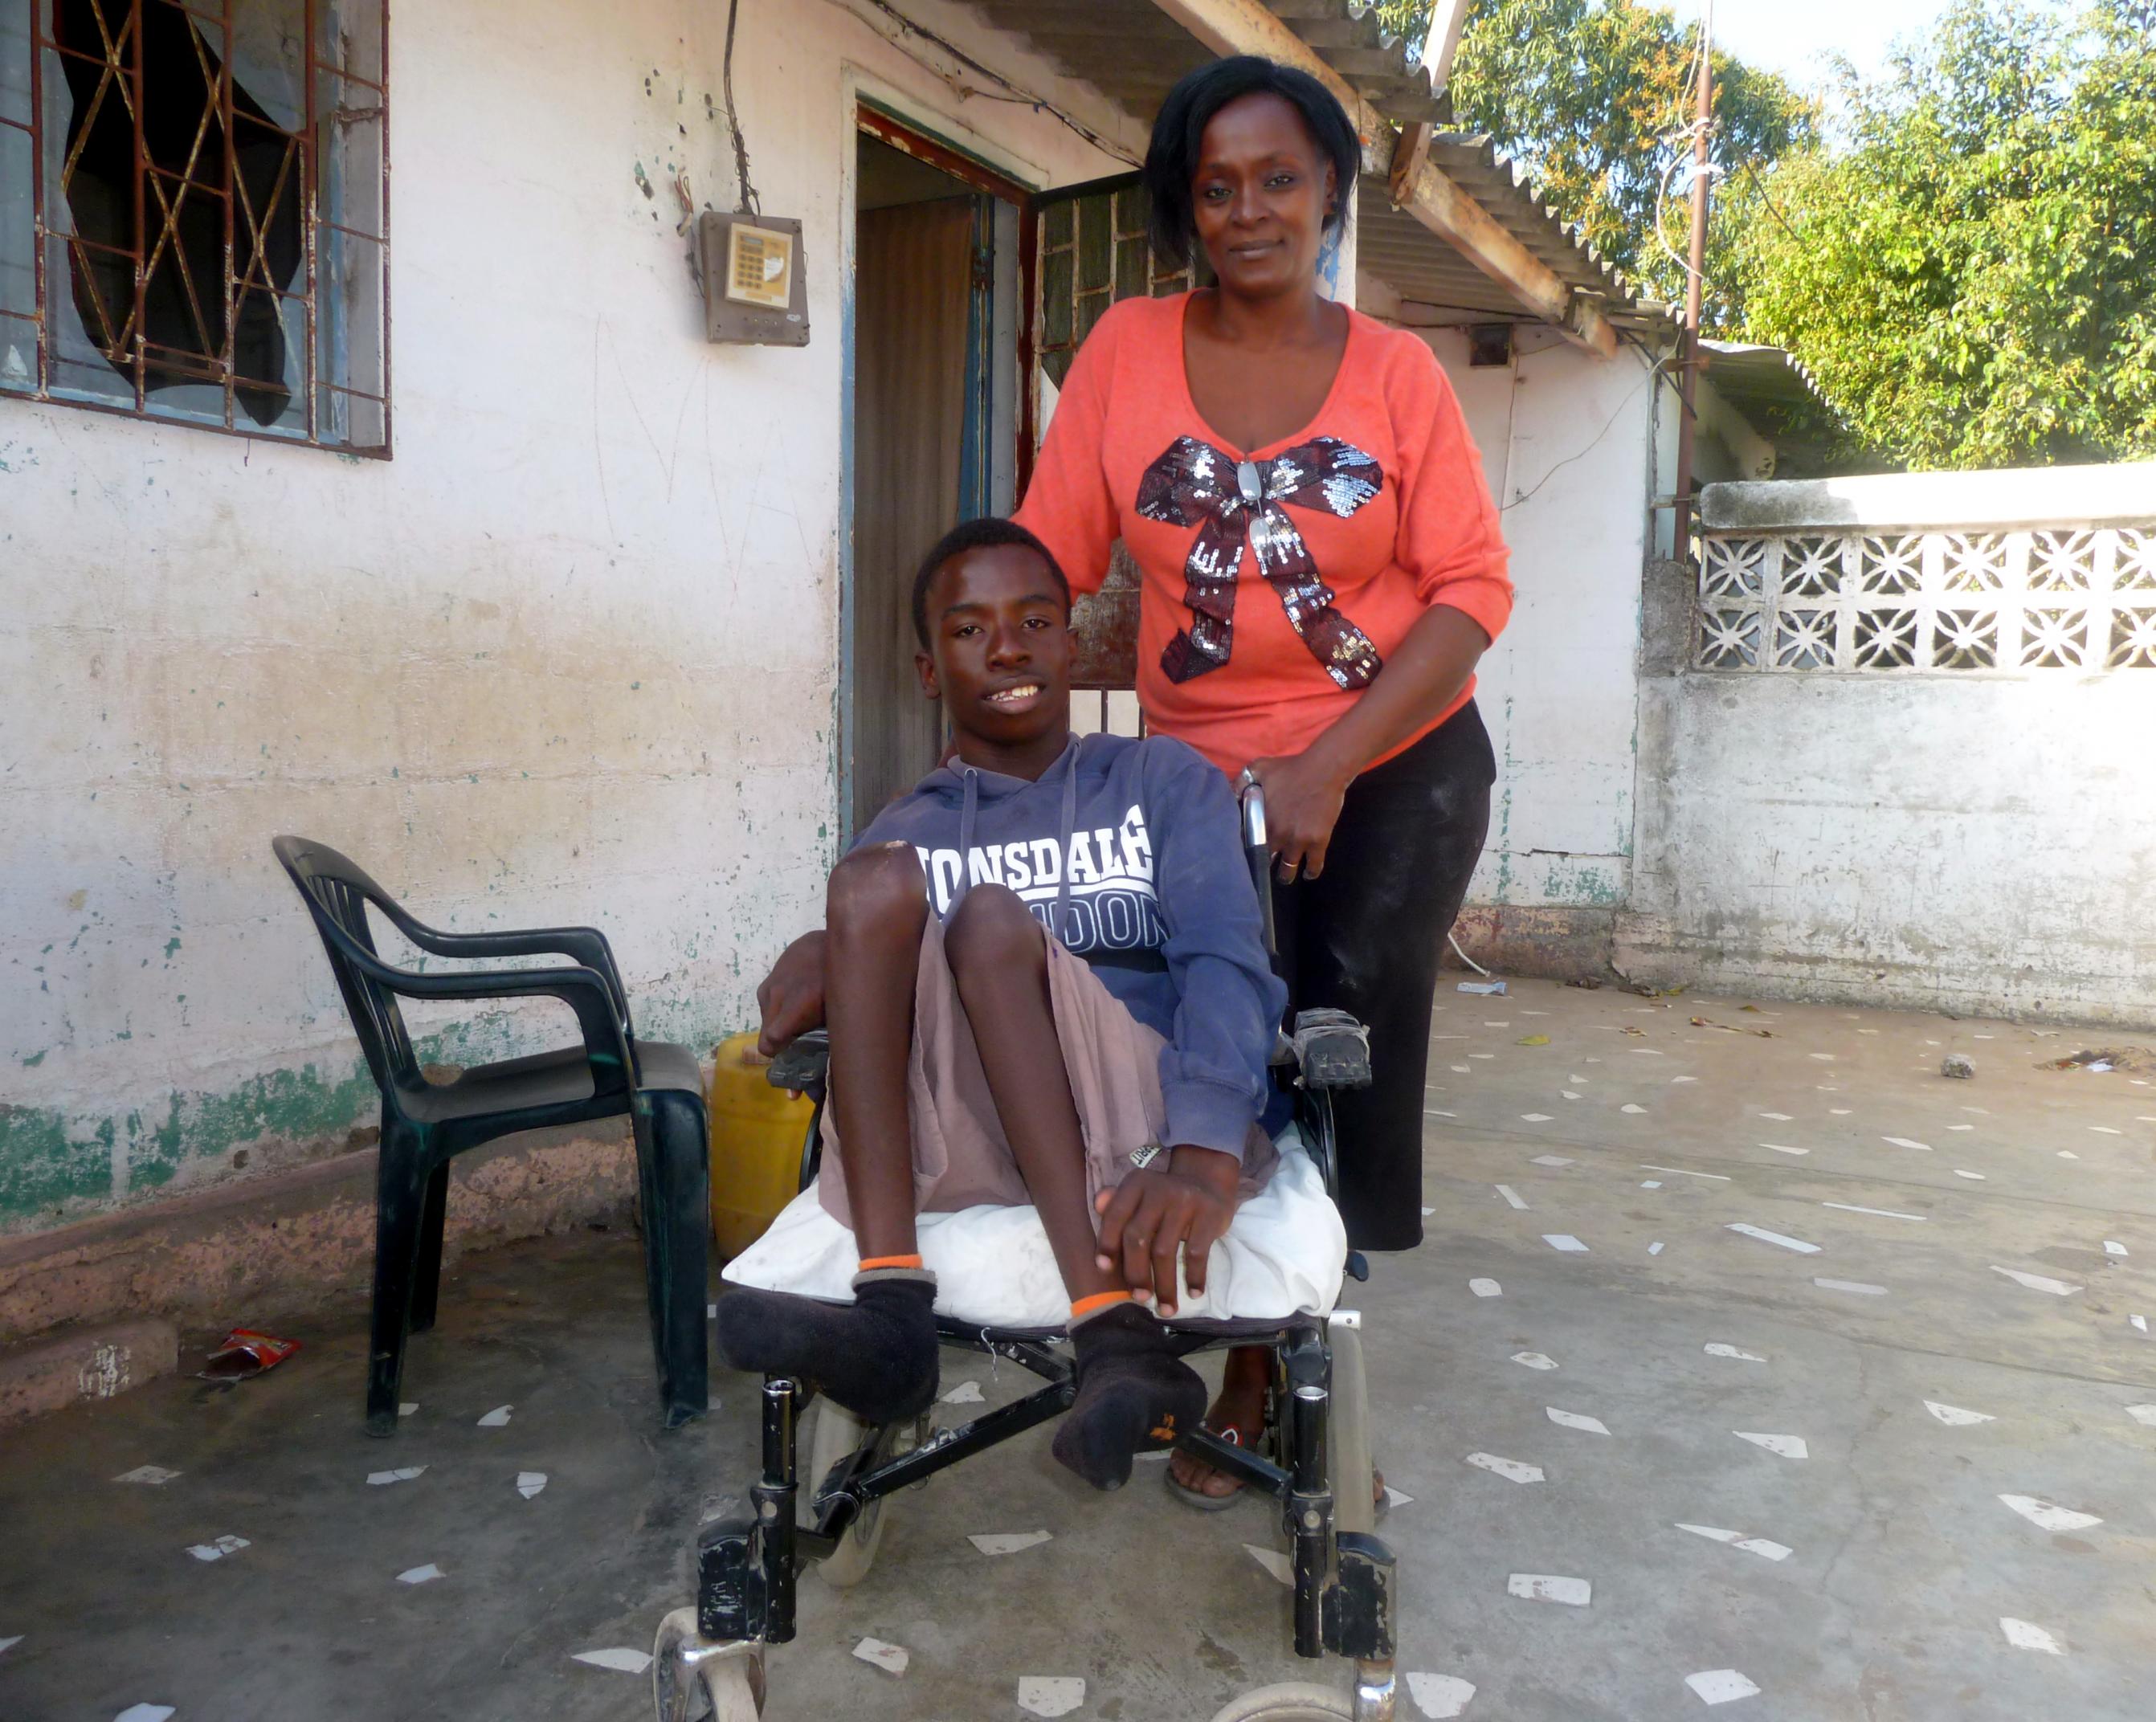 Mutter Maria Moinhe steht hinter ihrem Sohn Mario, der im Rollstuhl sitzt, die Beine hat er angewinkelt, beide lächeln in die Kamera